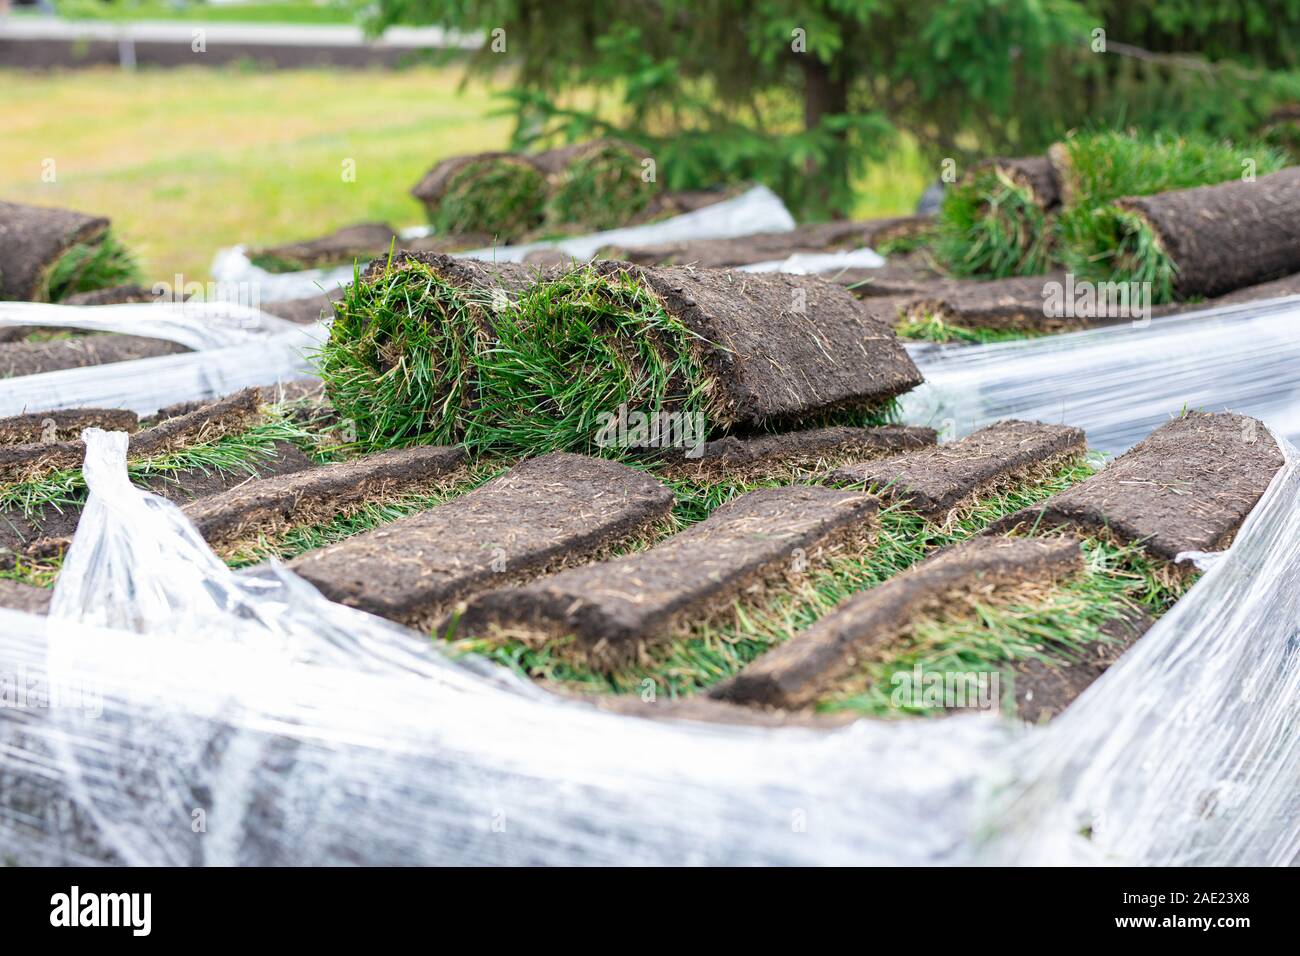 La pelouse en rouleau, rouleau de tapis d'herbe verte pour pelouse. Pile de la pelouse en rouleaux pour l'aménagement paysager Banque D'Images